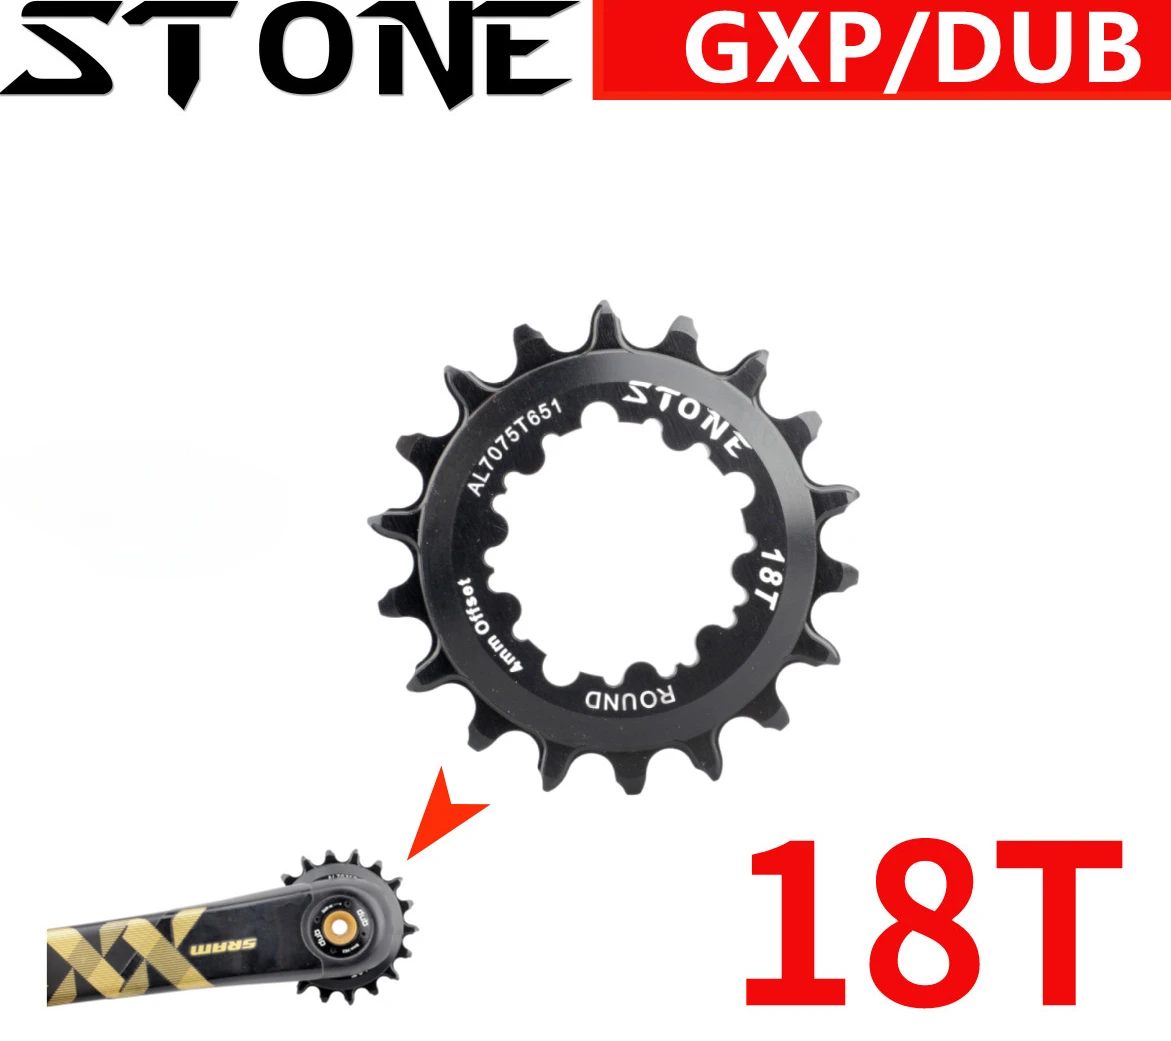 

Цепь для велосипеда с прямым креплением, каменная звезда для Sram 18t, BMX, альпинизма, для горных велосипедов, производительность 18T, узкие, широкие зубья GXP DUB